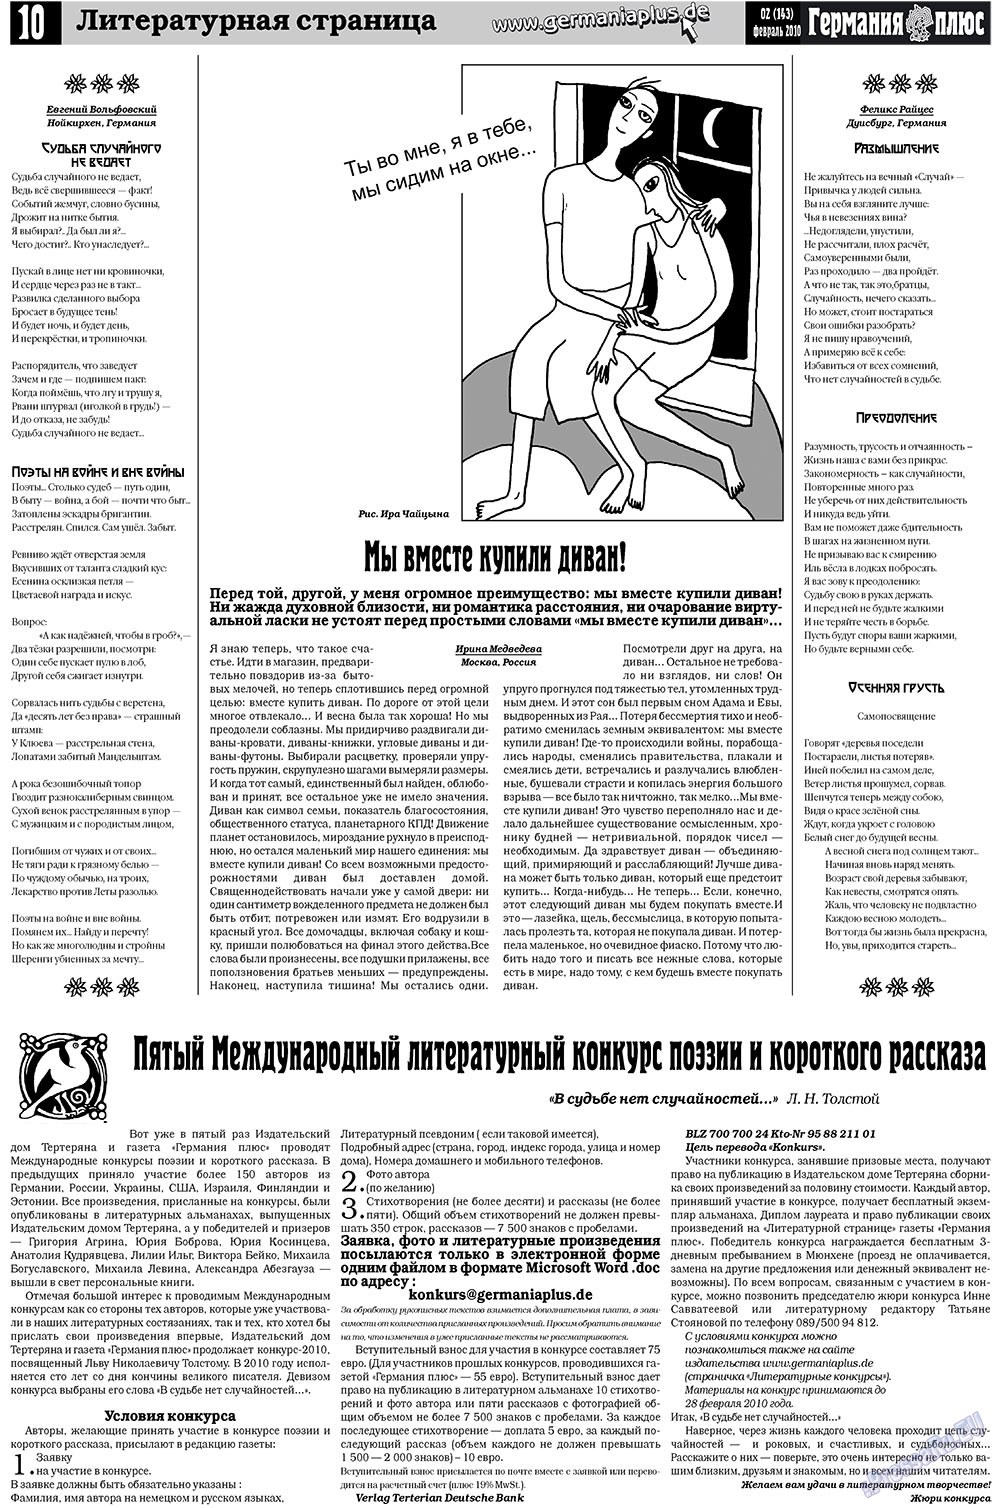 Германия плюс, газета. 2010 №2 стр.10